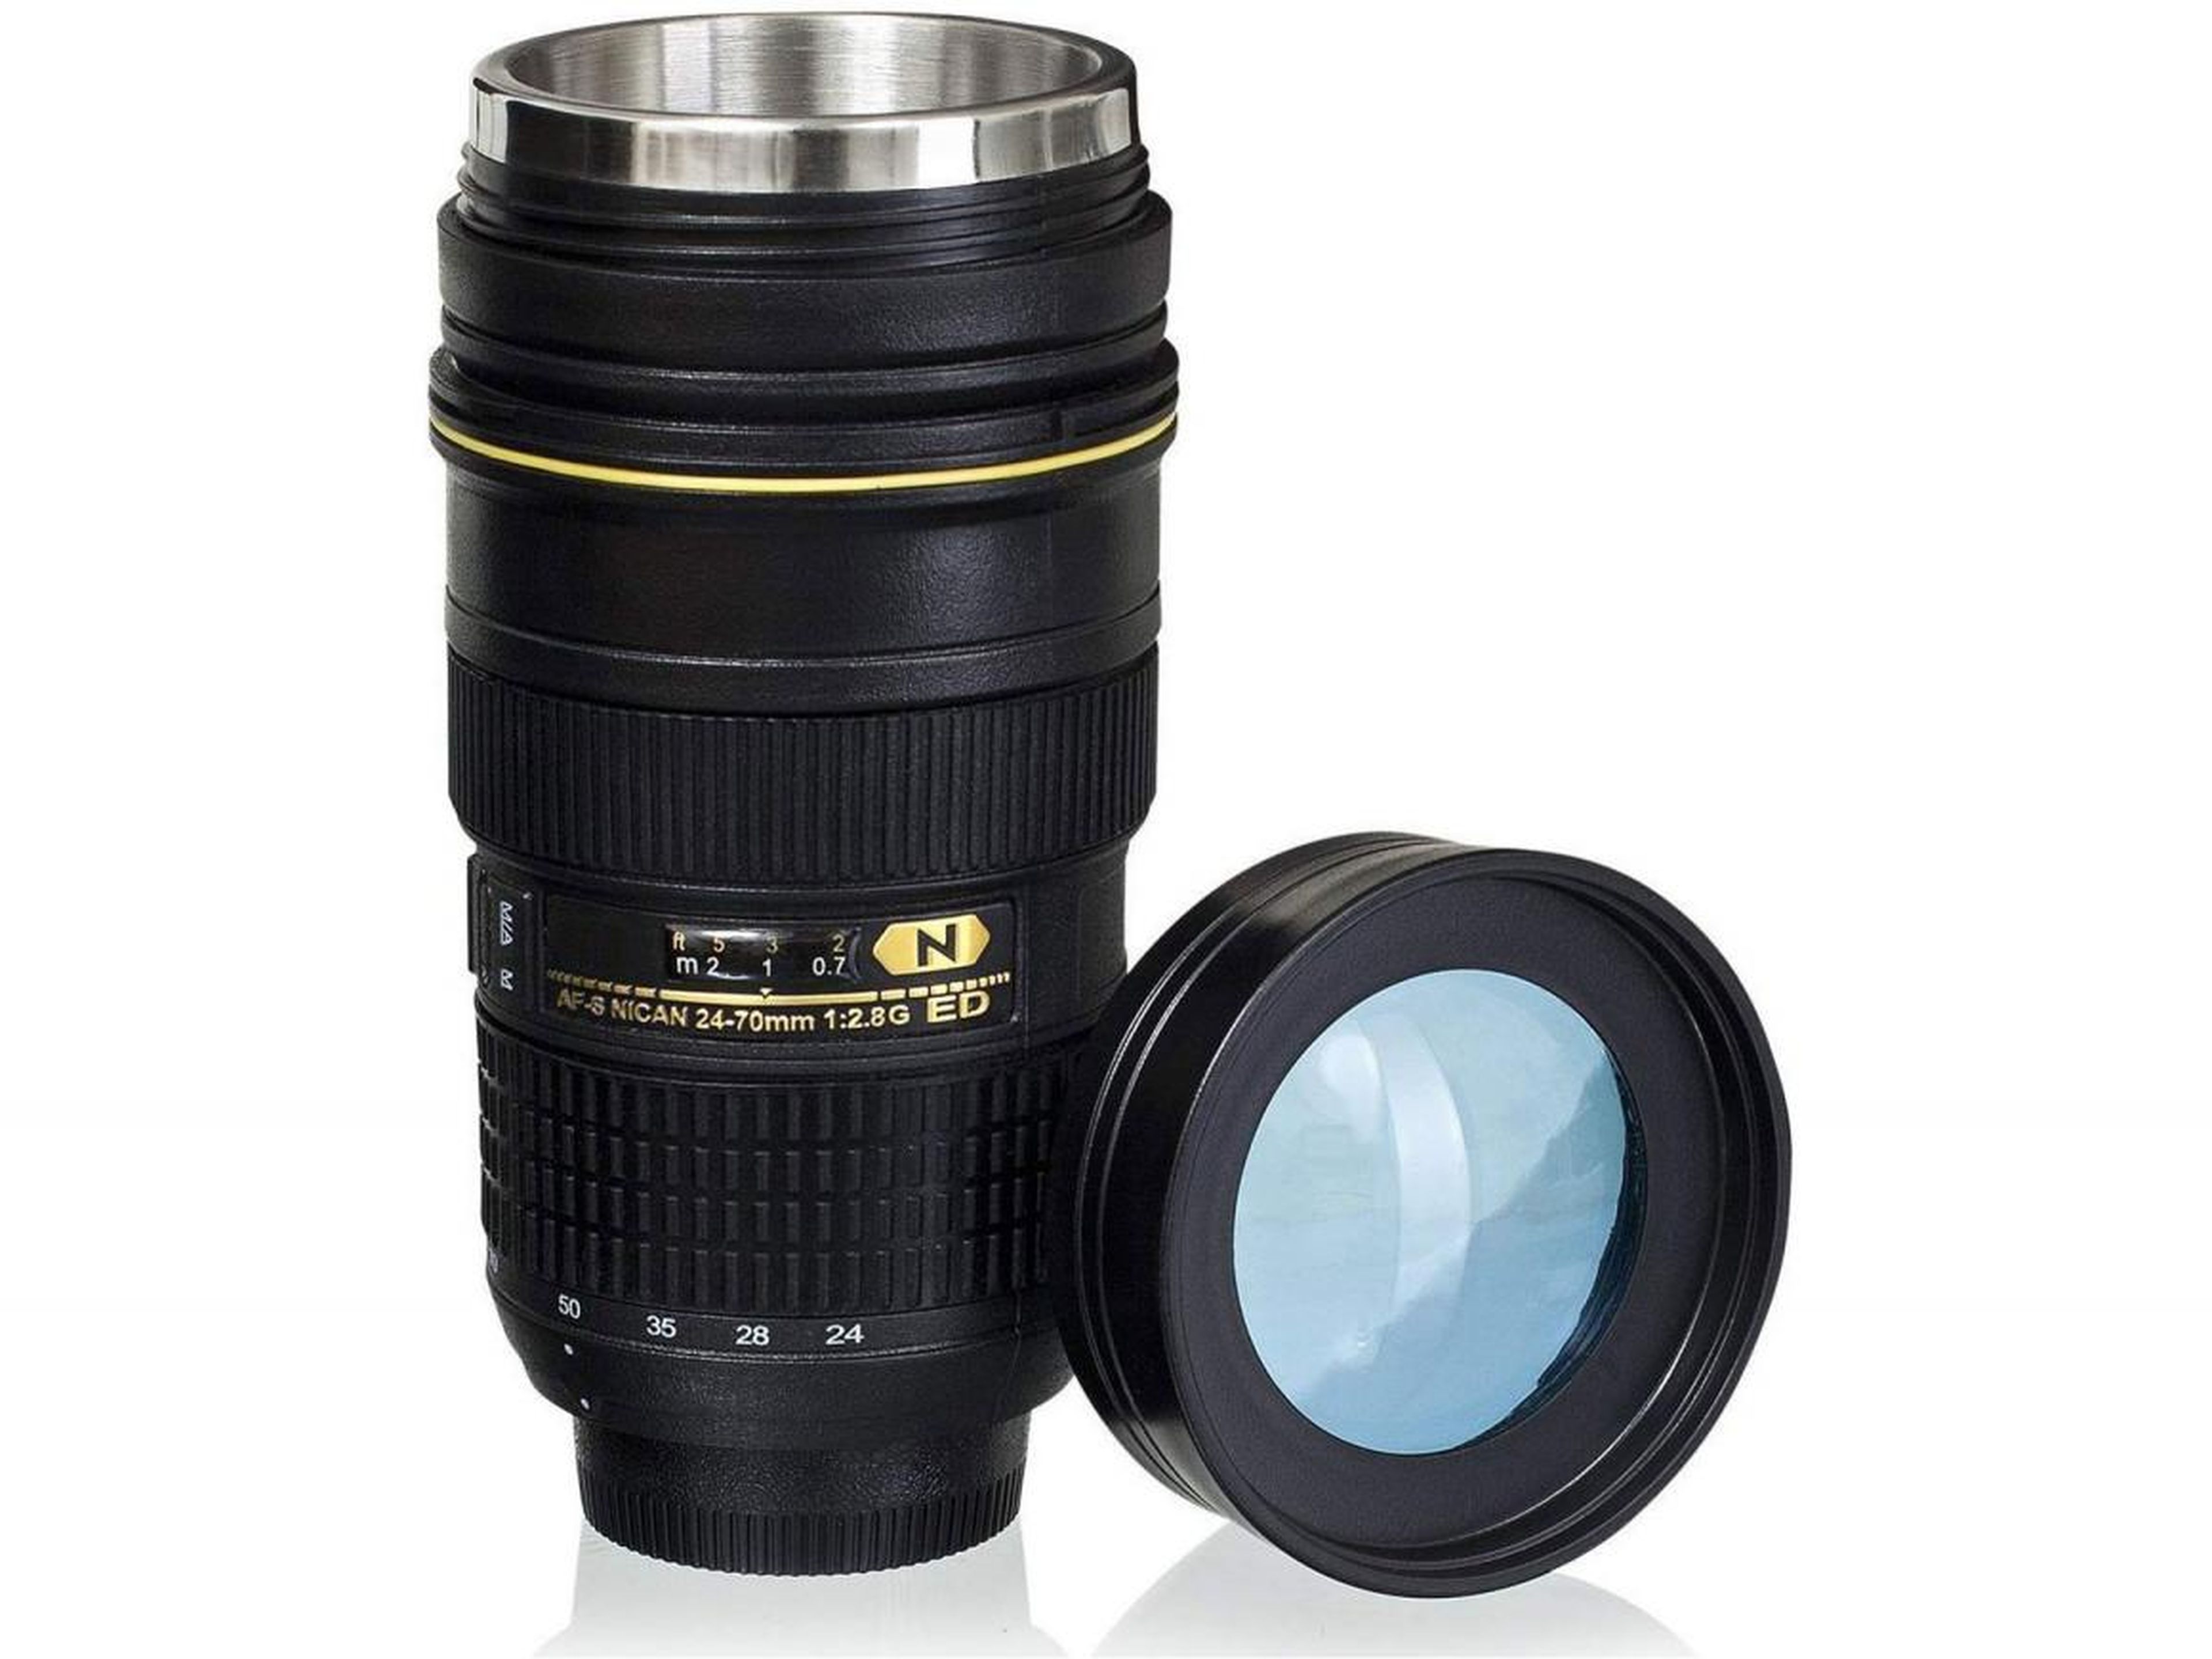 A lens-shaped coffee mug